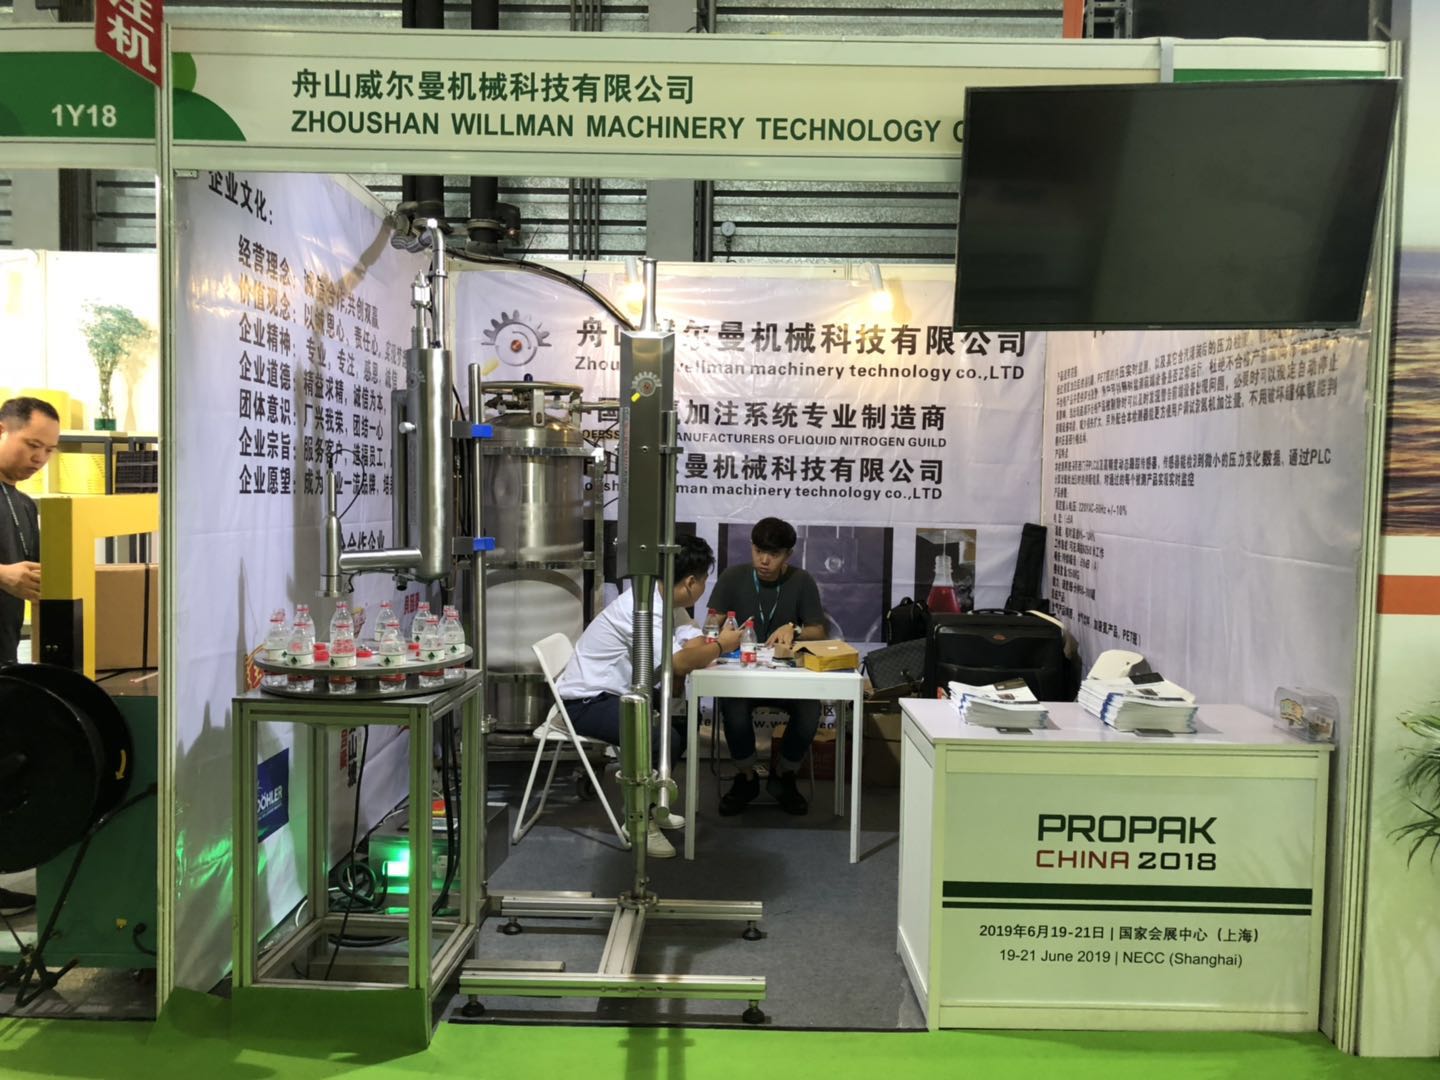 Zhoushan willman machinery technology Co.,Ltd